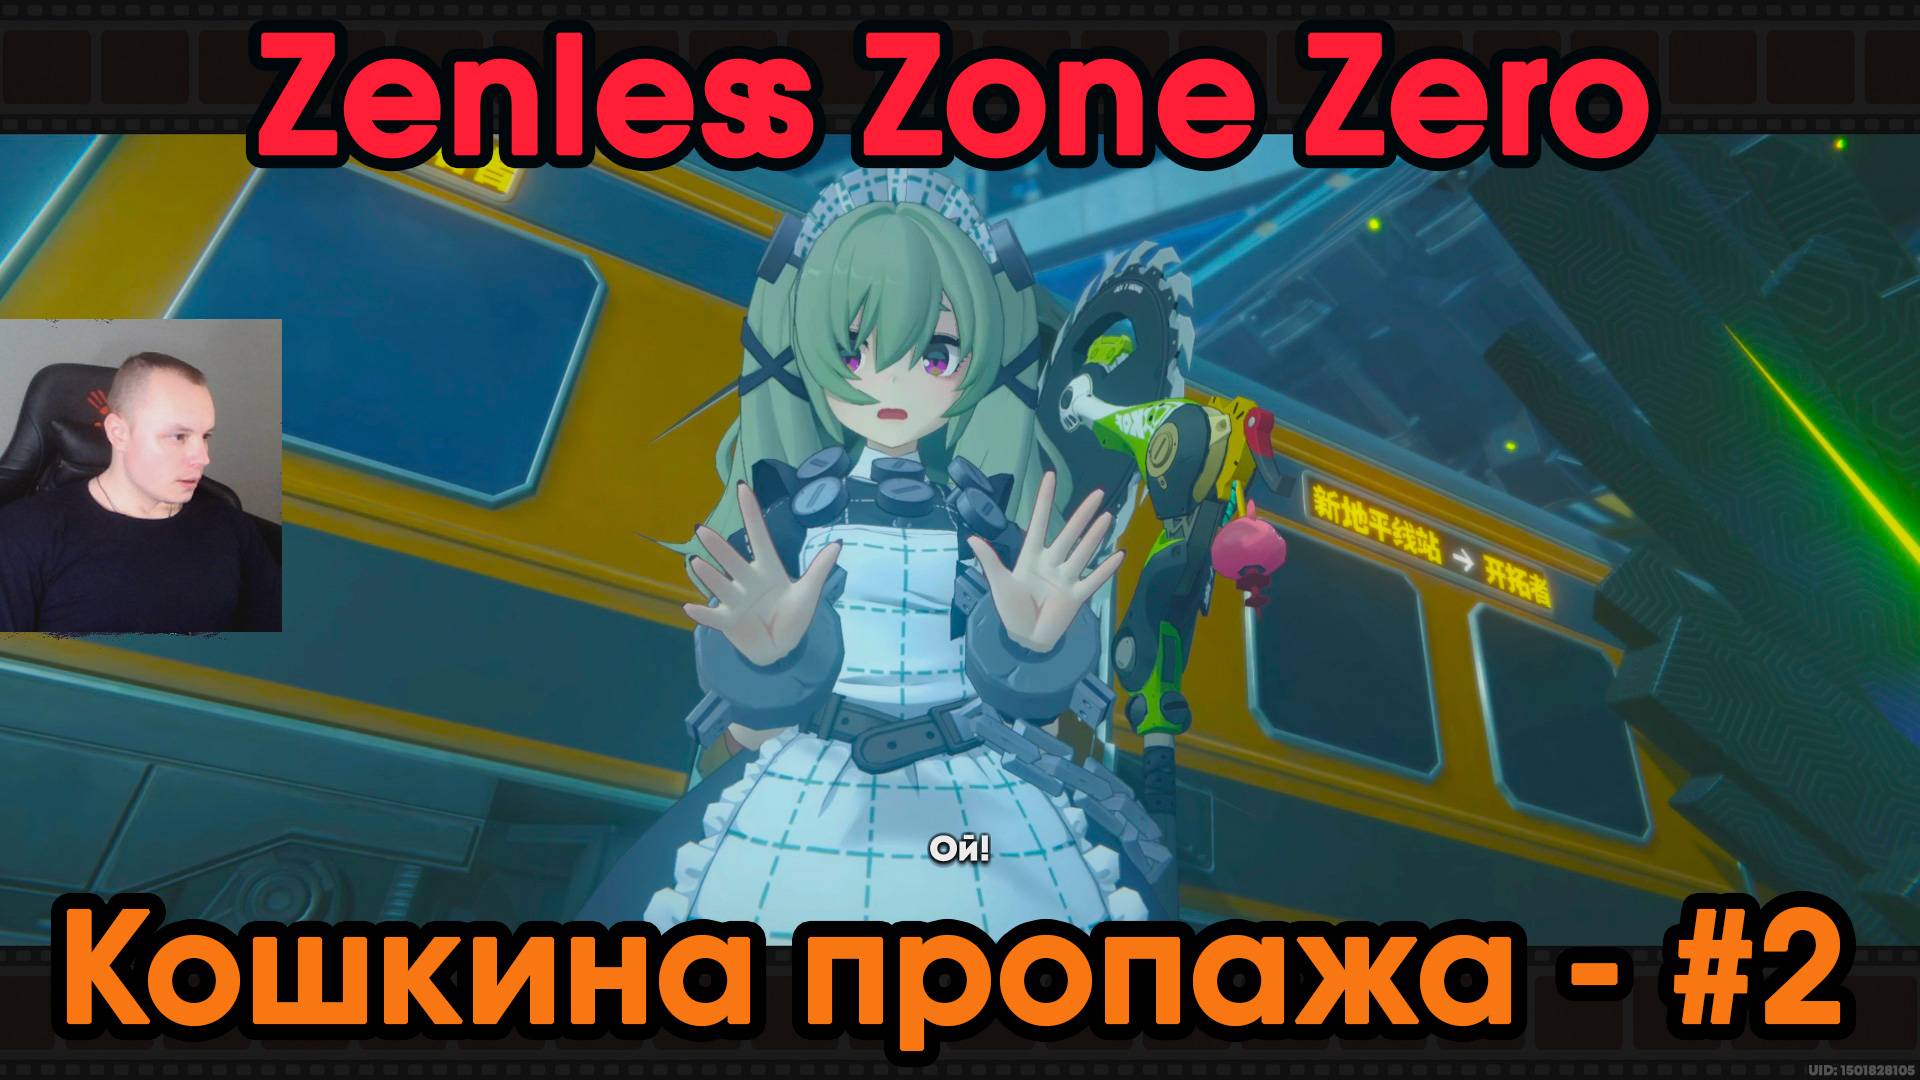 Zenless Zone Zero ➤ Кошкина пропажа #2 ➤ Последний поезд отправляется ➤ Игра ZZZ ➤ Зенлес Зоне Зиро